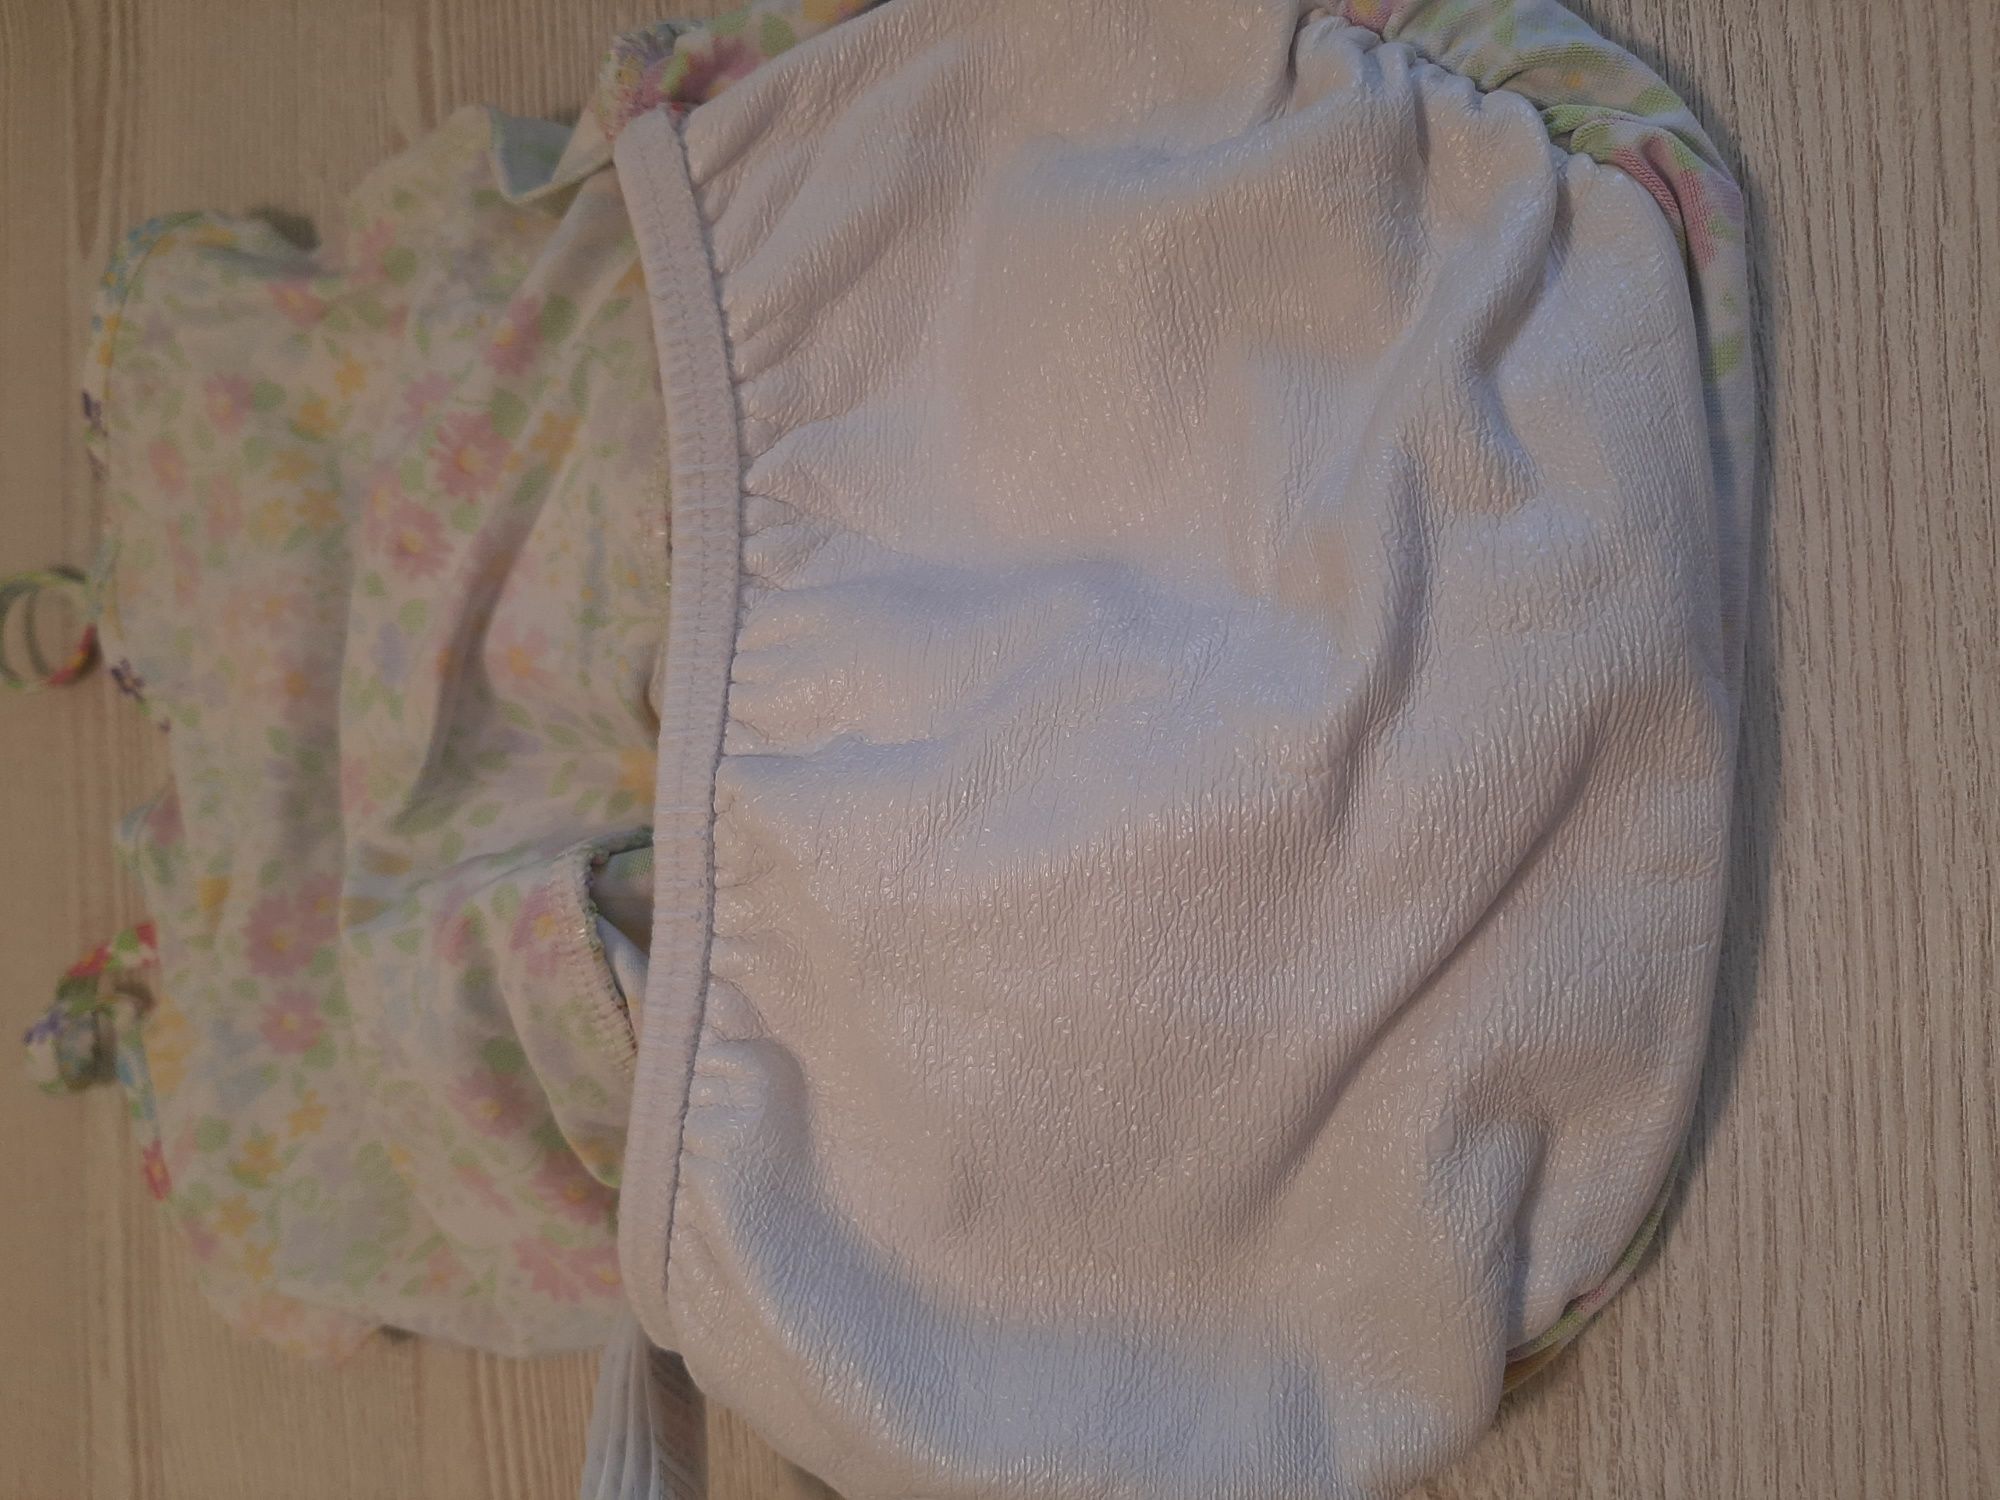 Купальник с памперсом для малышки от полугода до 2 лет